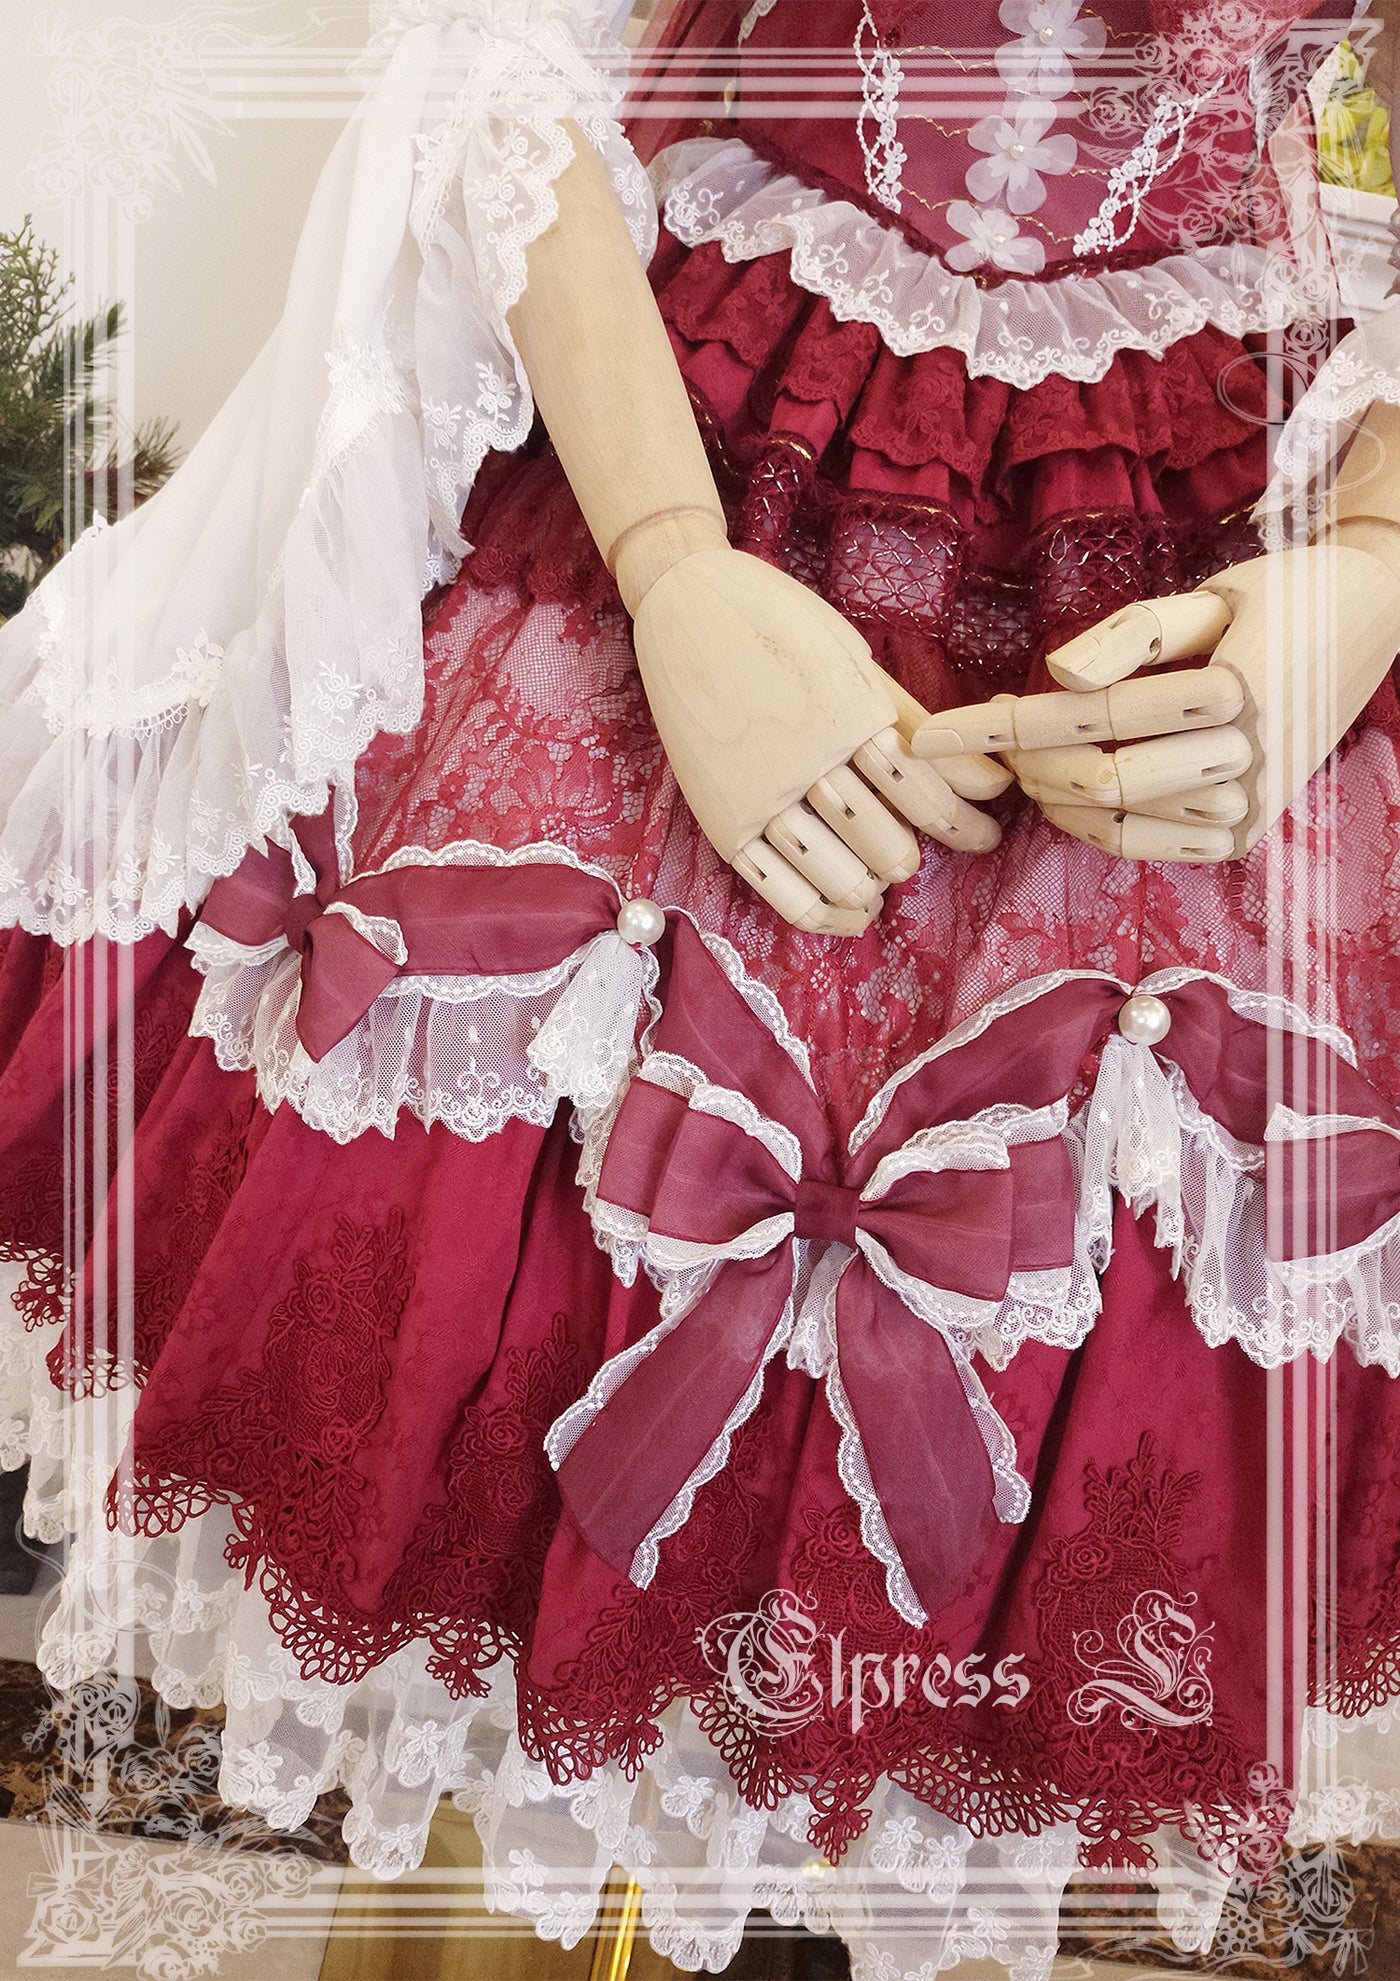 Holy Jewel ribbon and lace princess dress